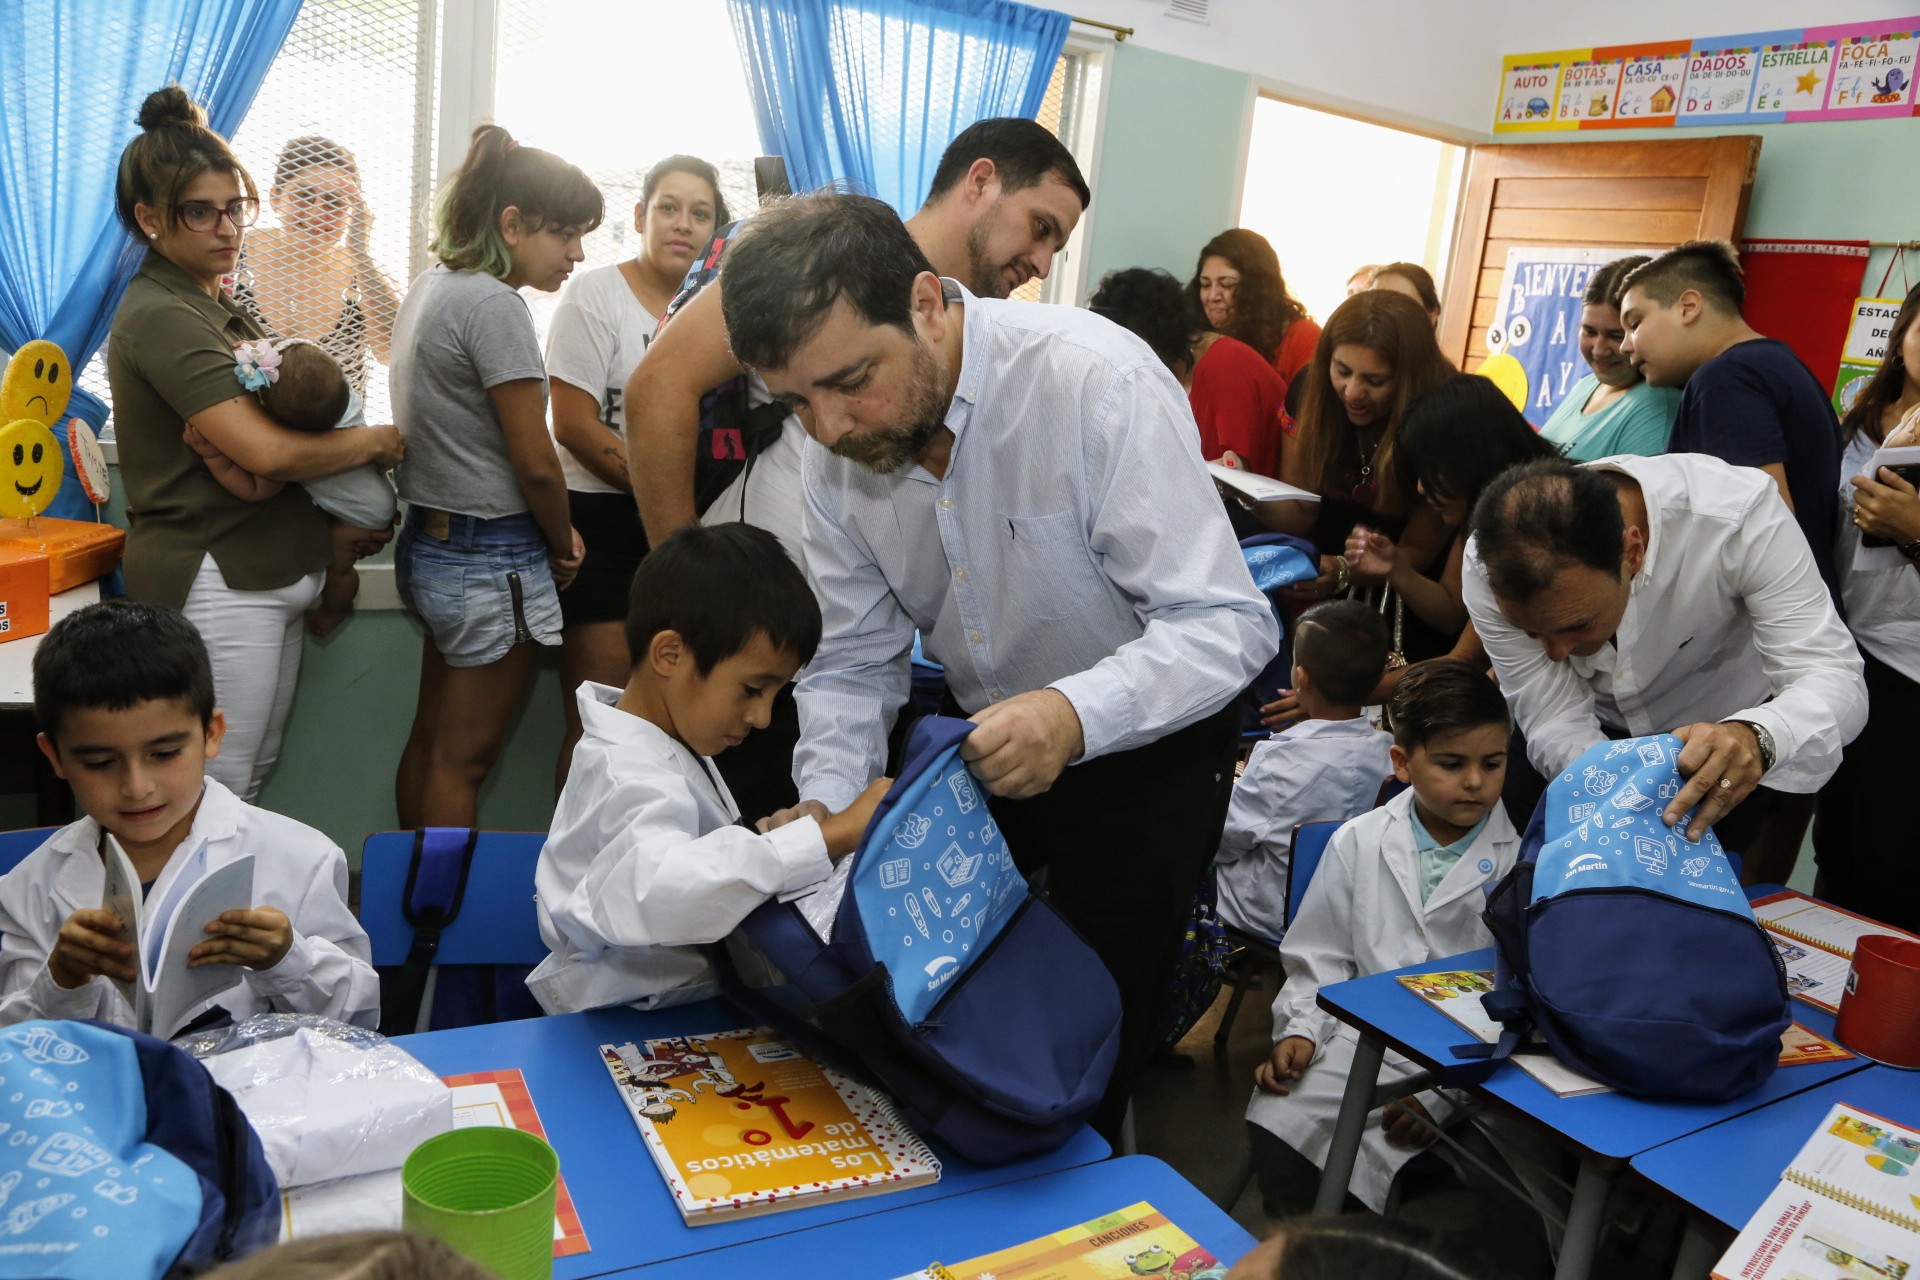  Más de 4 mil chicos recibieron un kit escolar en el inicio de clases